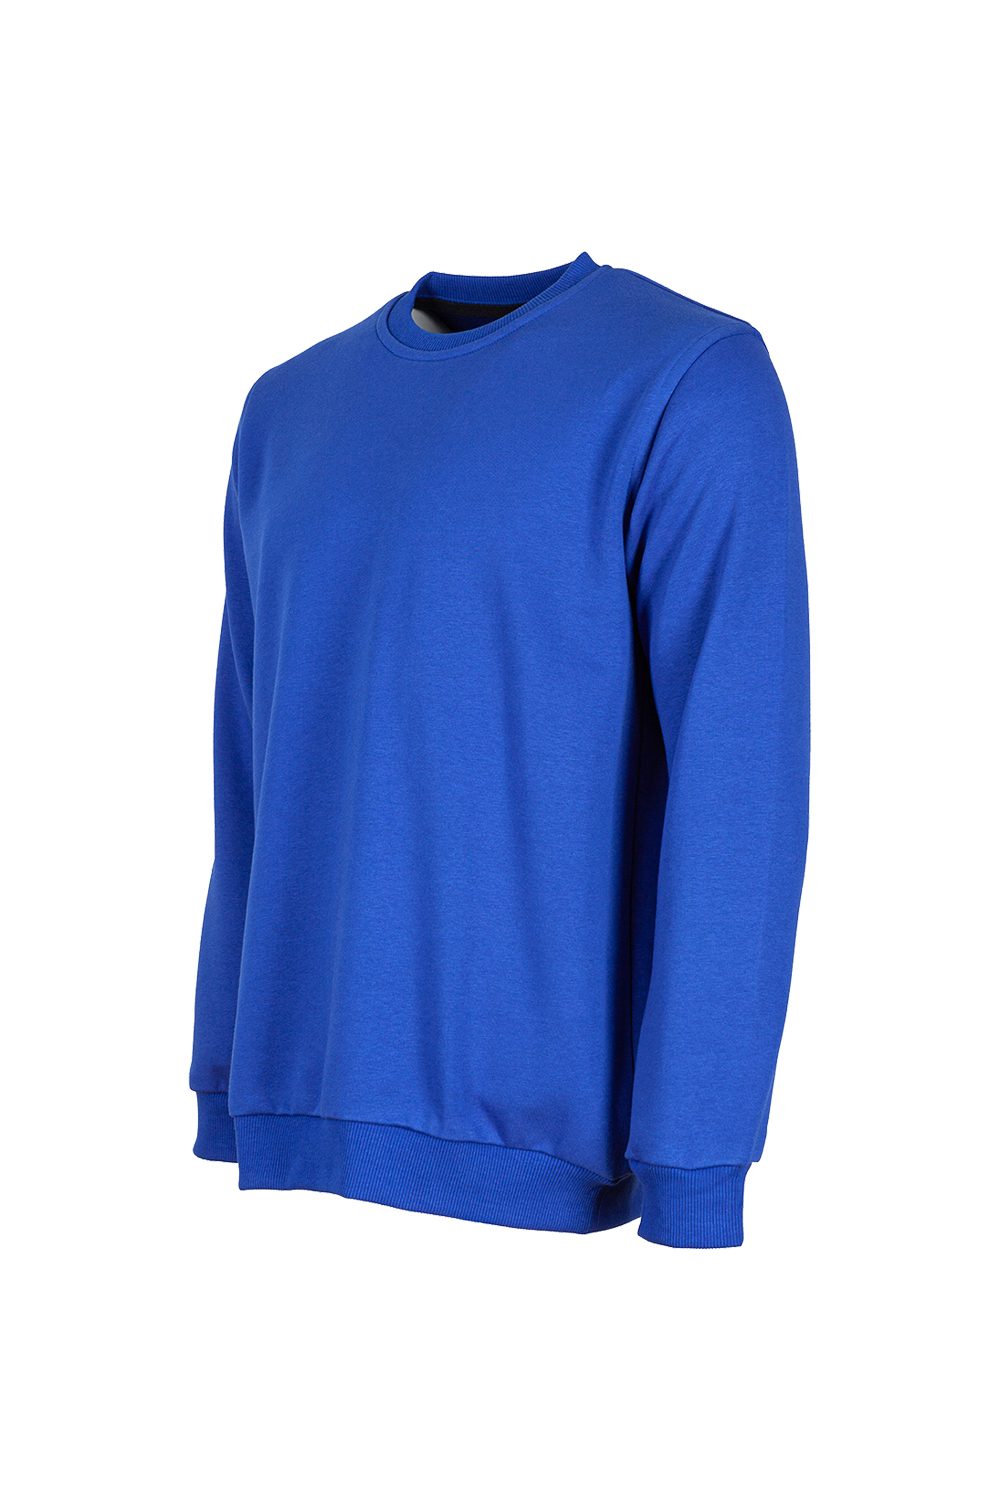 Sıfır Yaka Sweatshirt / Sıfır Yaka Sweatshirt / İş Kıyafetleri